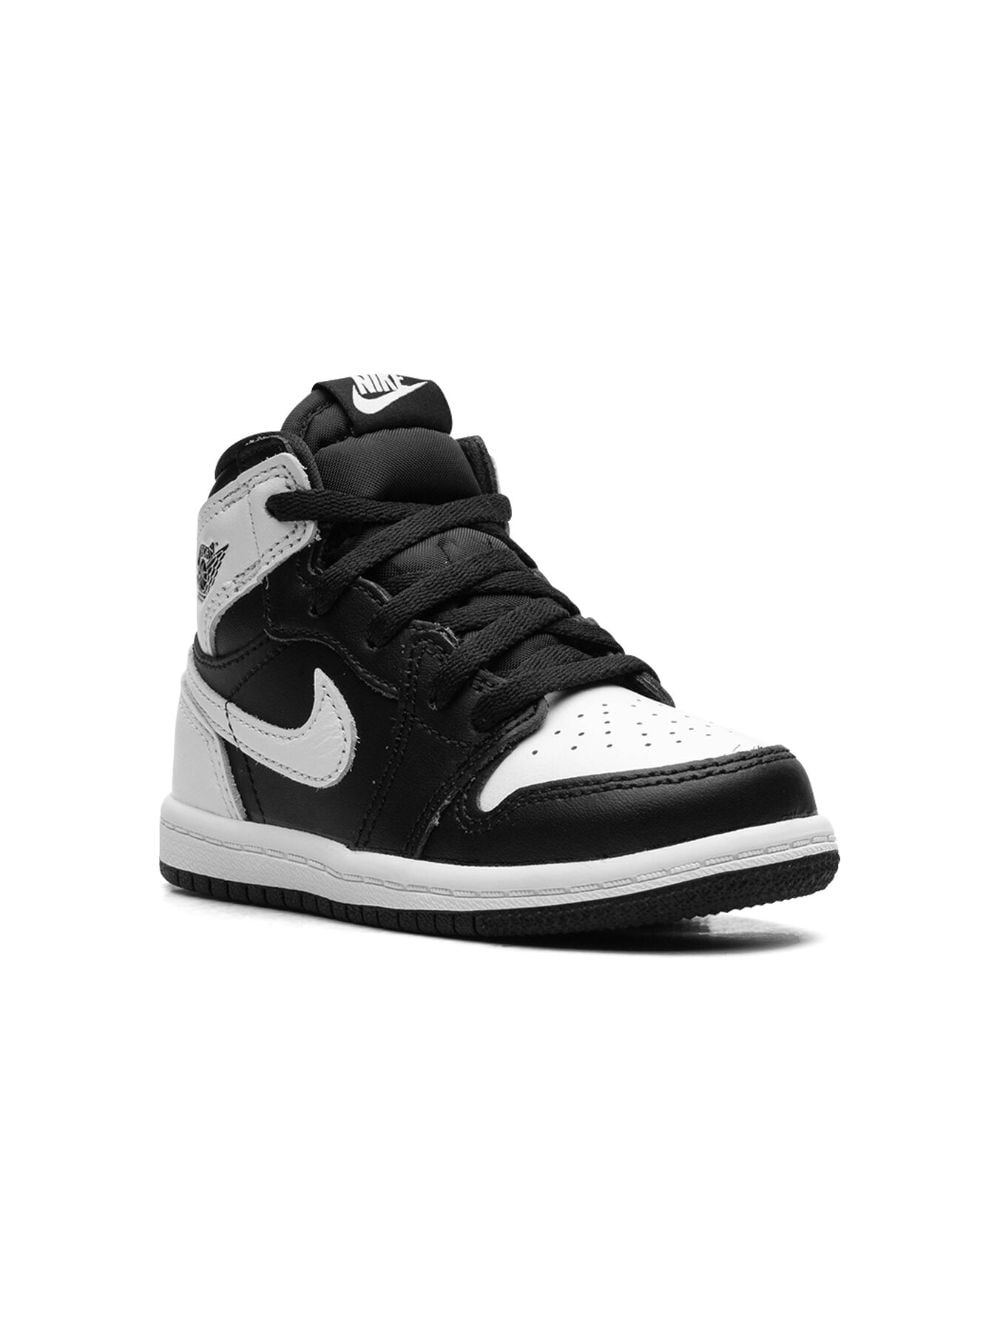 Jordan Kids Air Jordan 1 Retro High OG "Reverse Panda" sneakers - Black von Jordan Kids